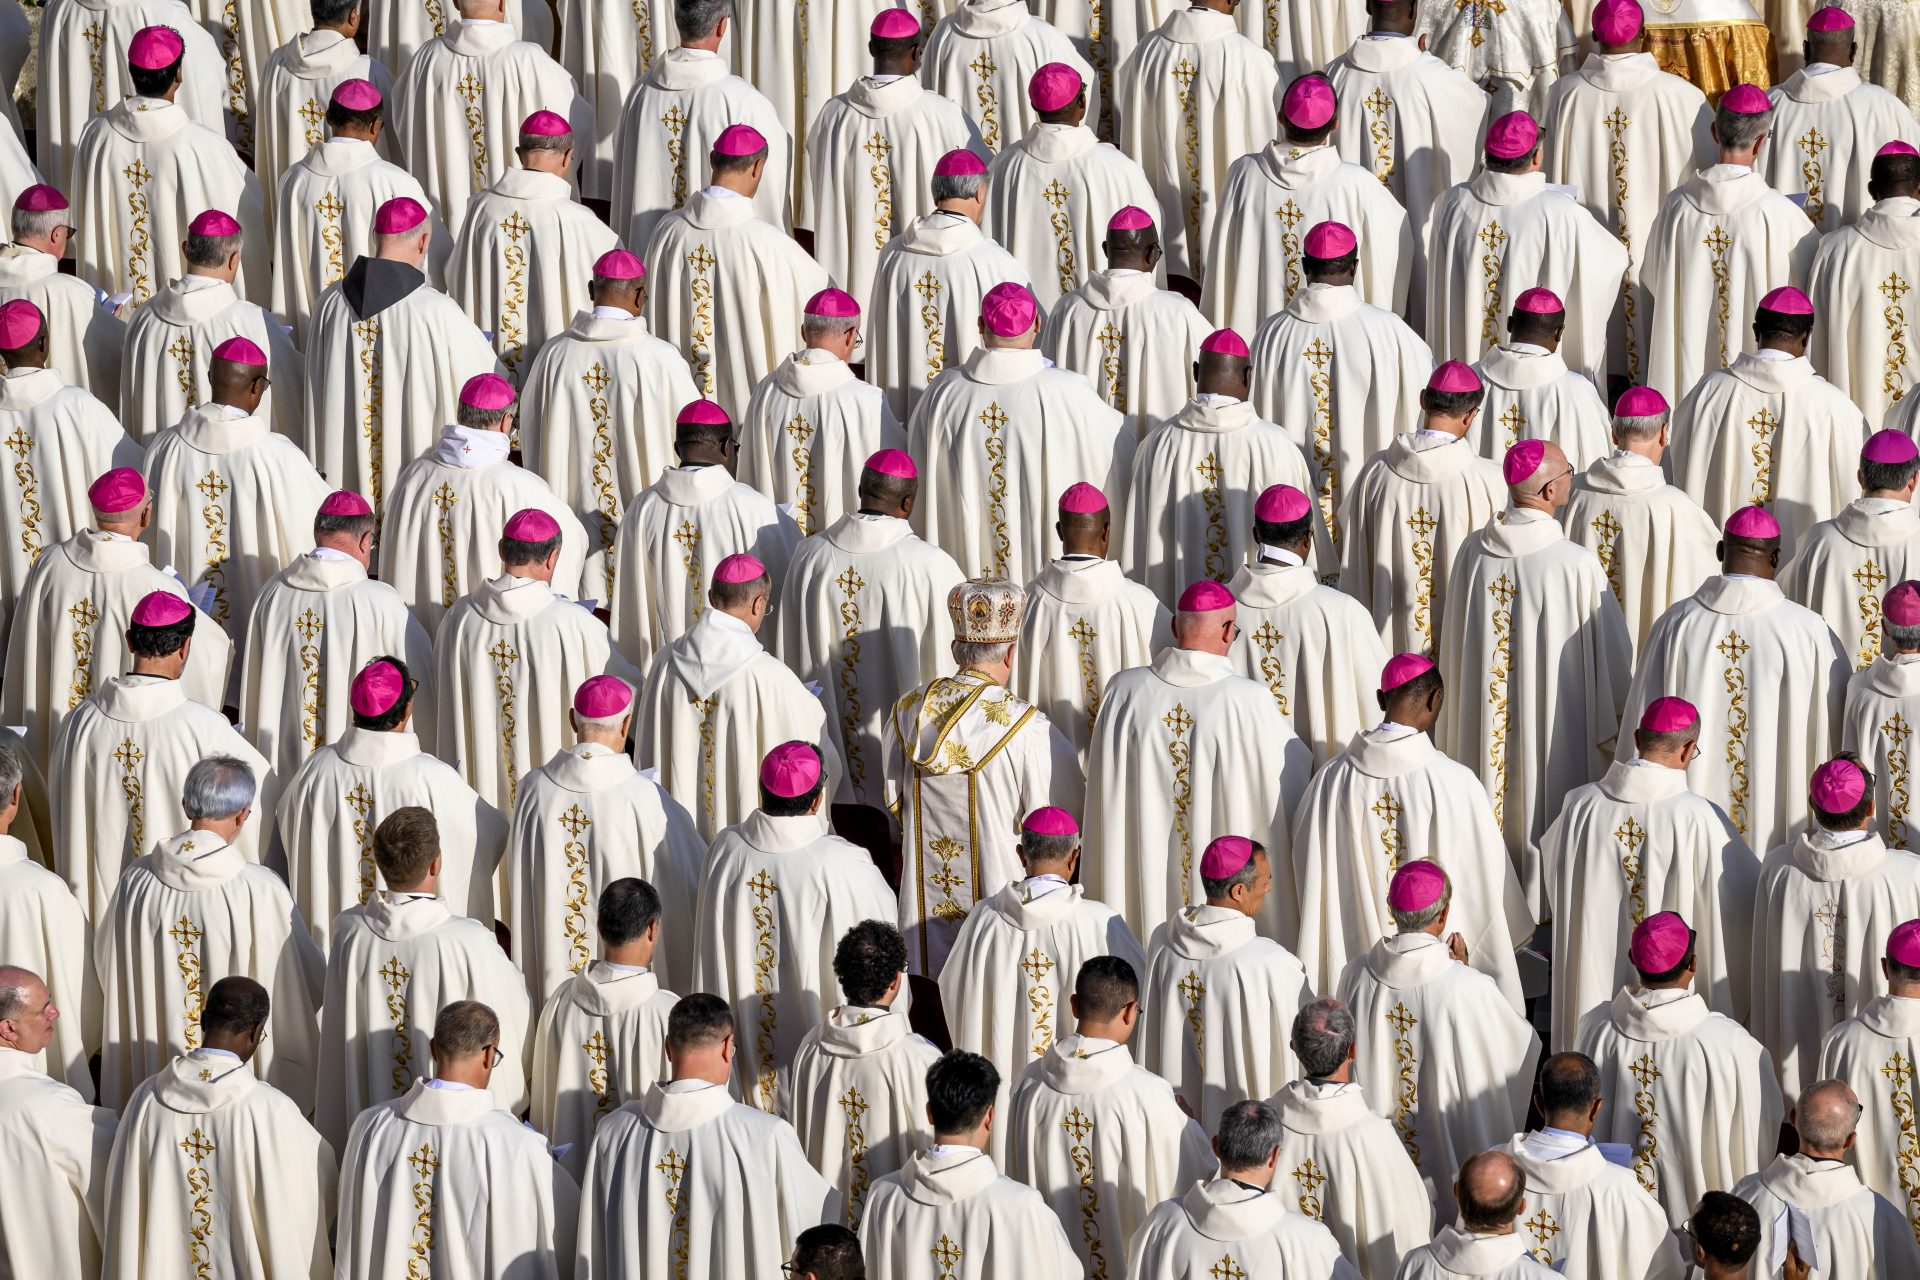 A gathering of bishops